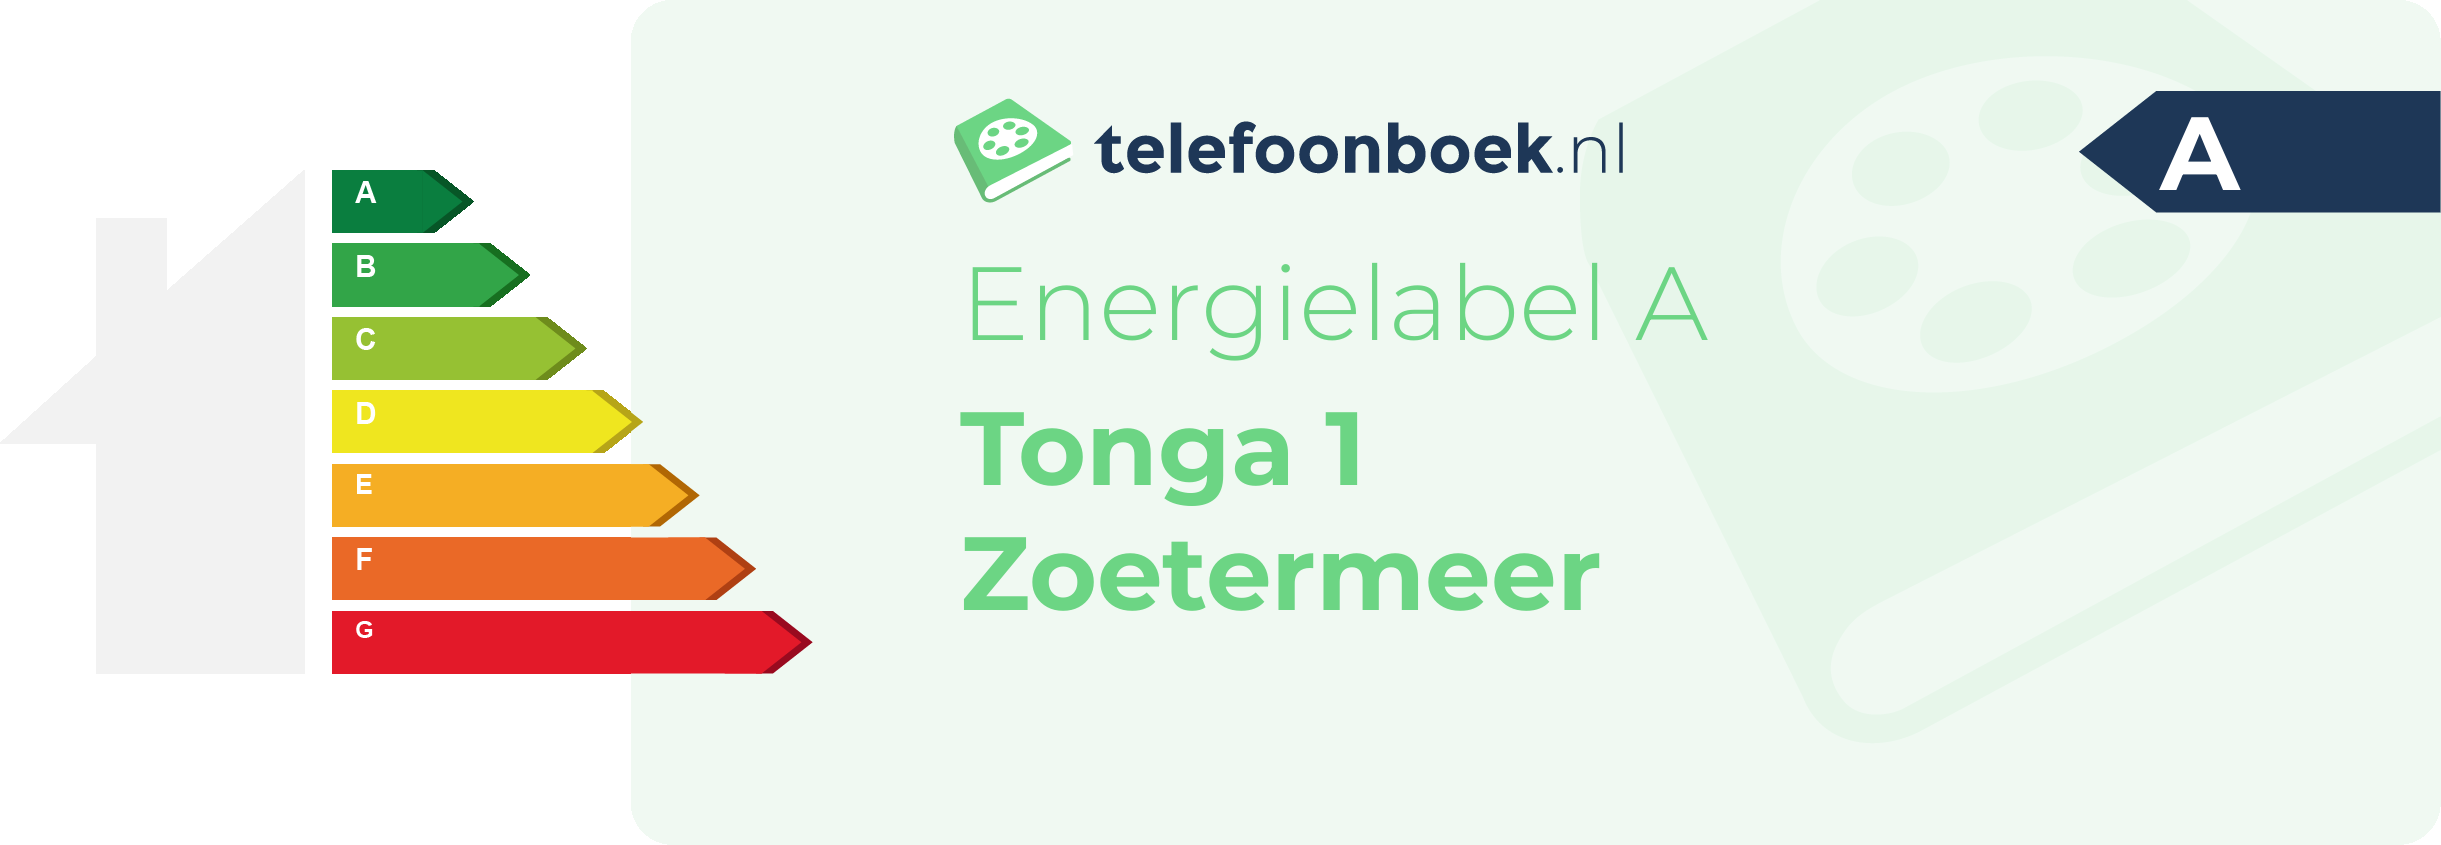 Energielabel Tonga 1 Zoetermeer